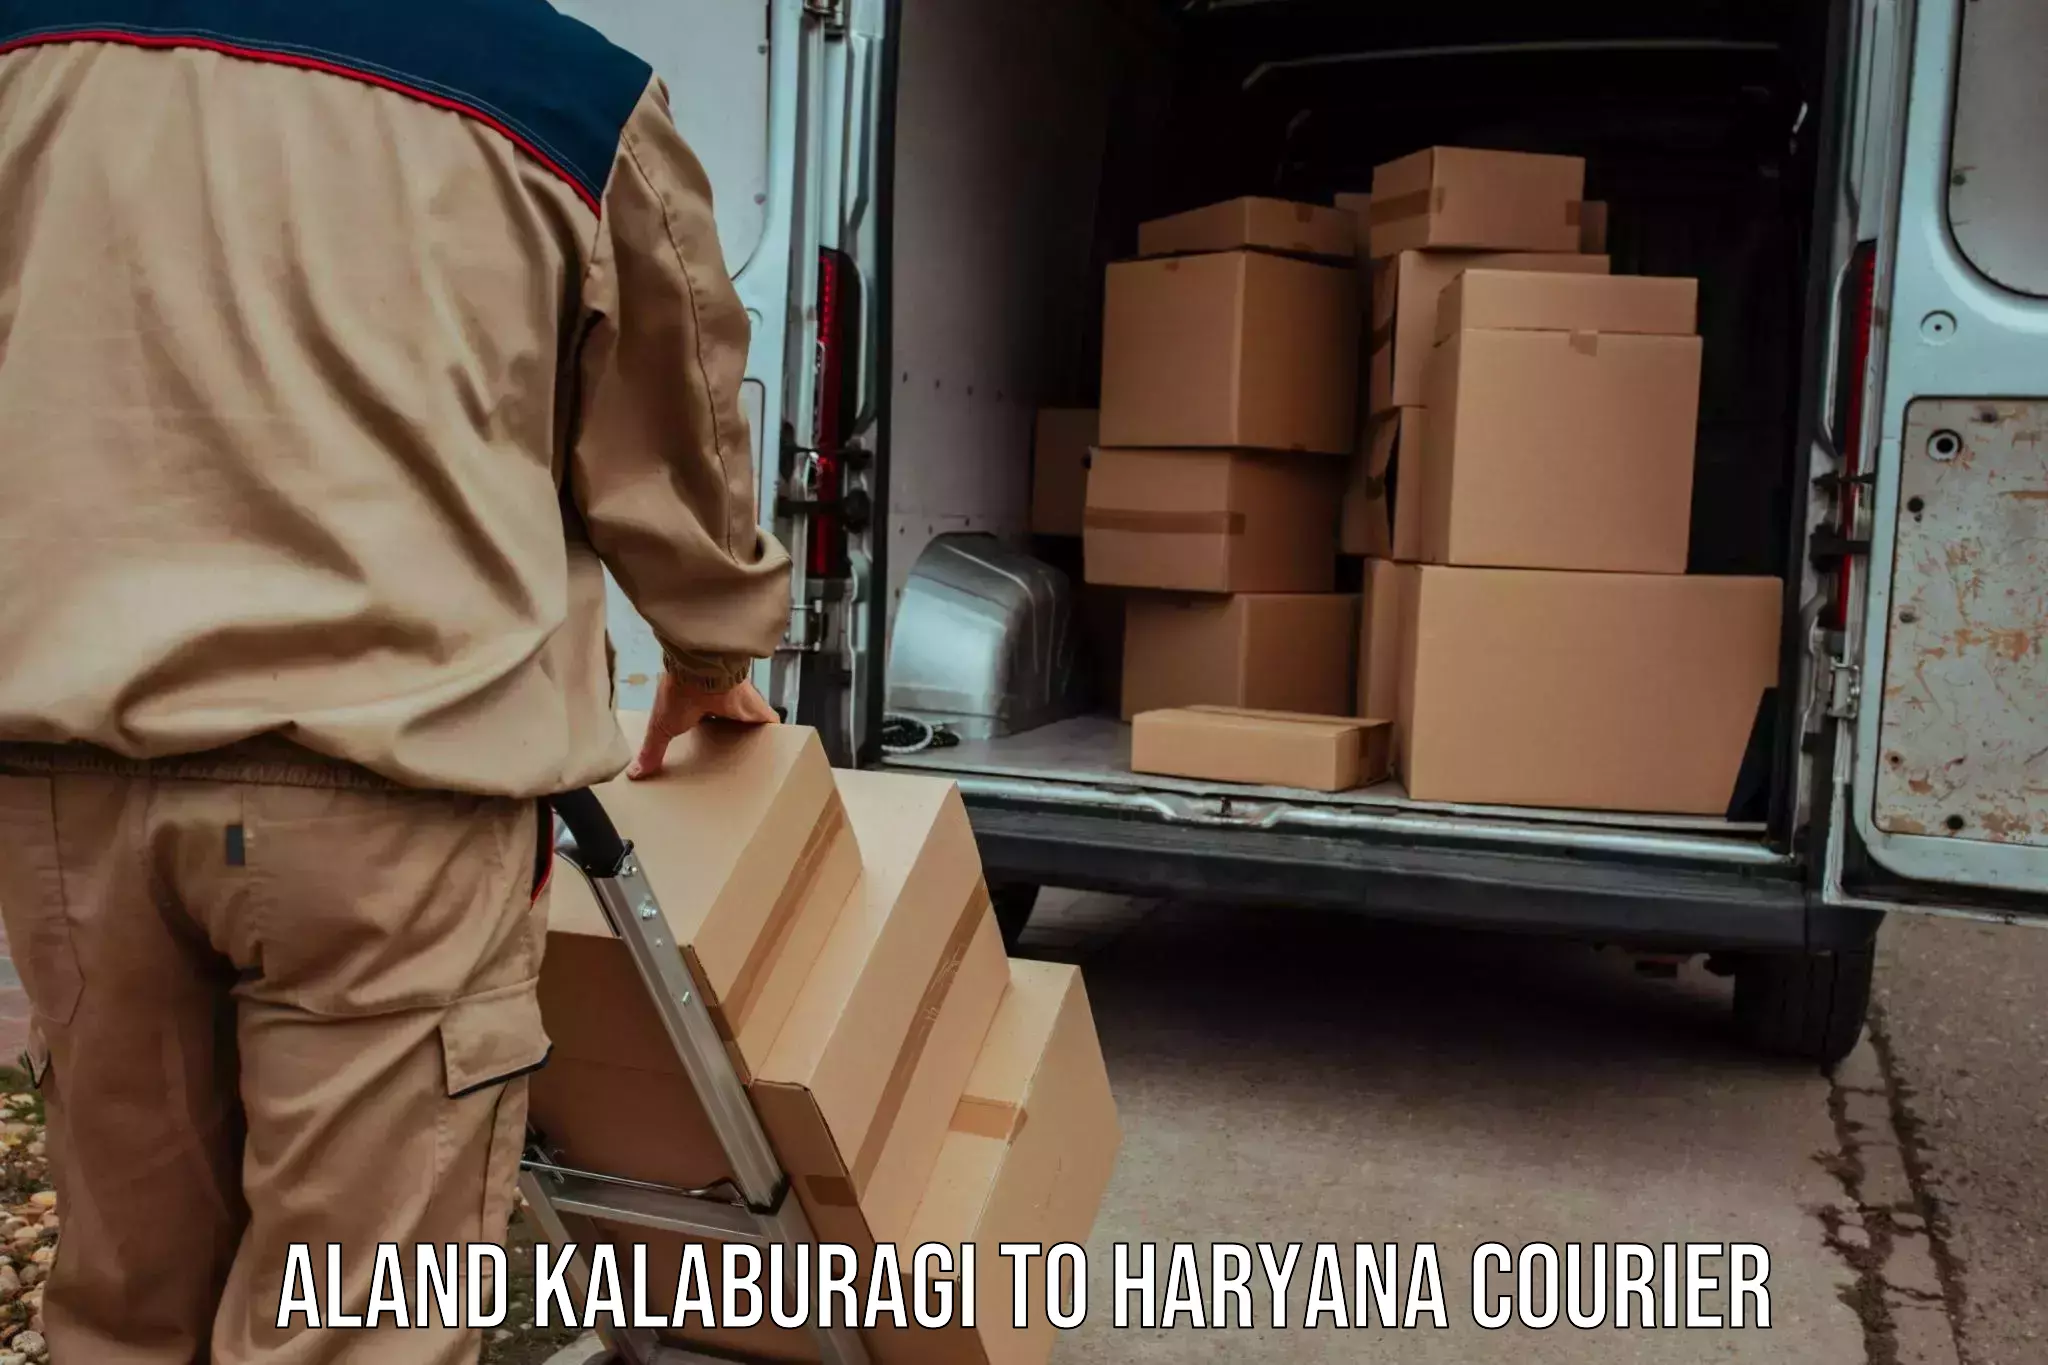 High-priority parcel service Aland Kalaburagi to Nuh